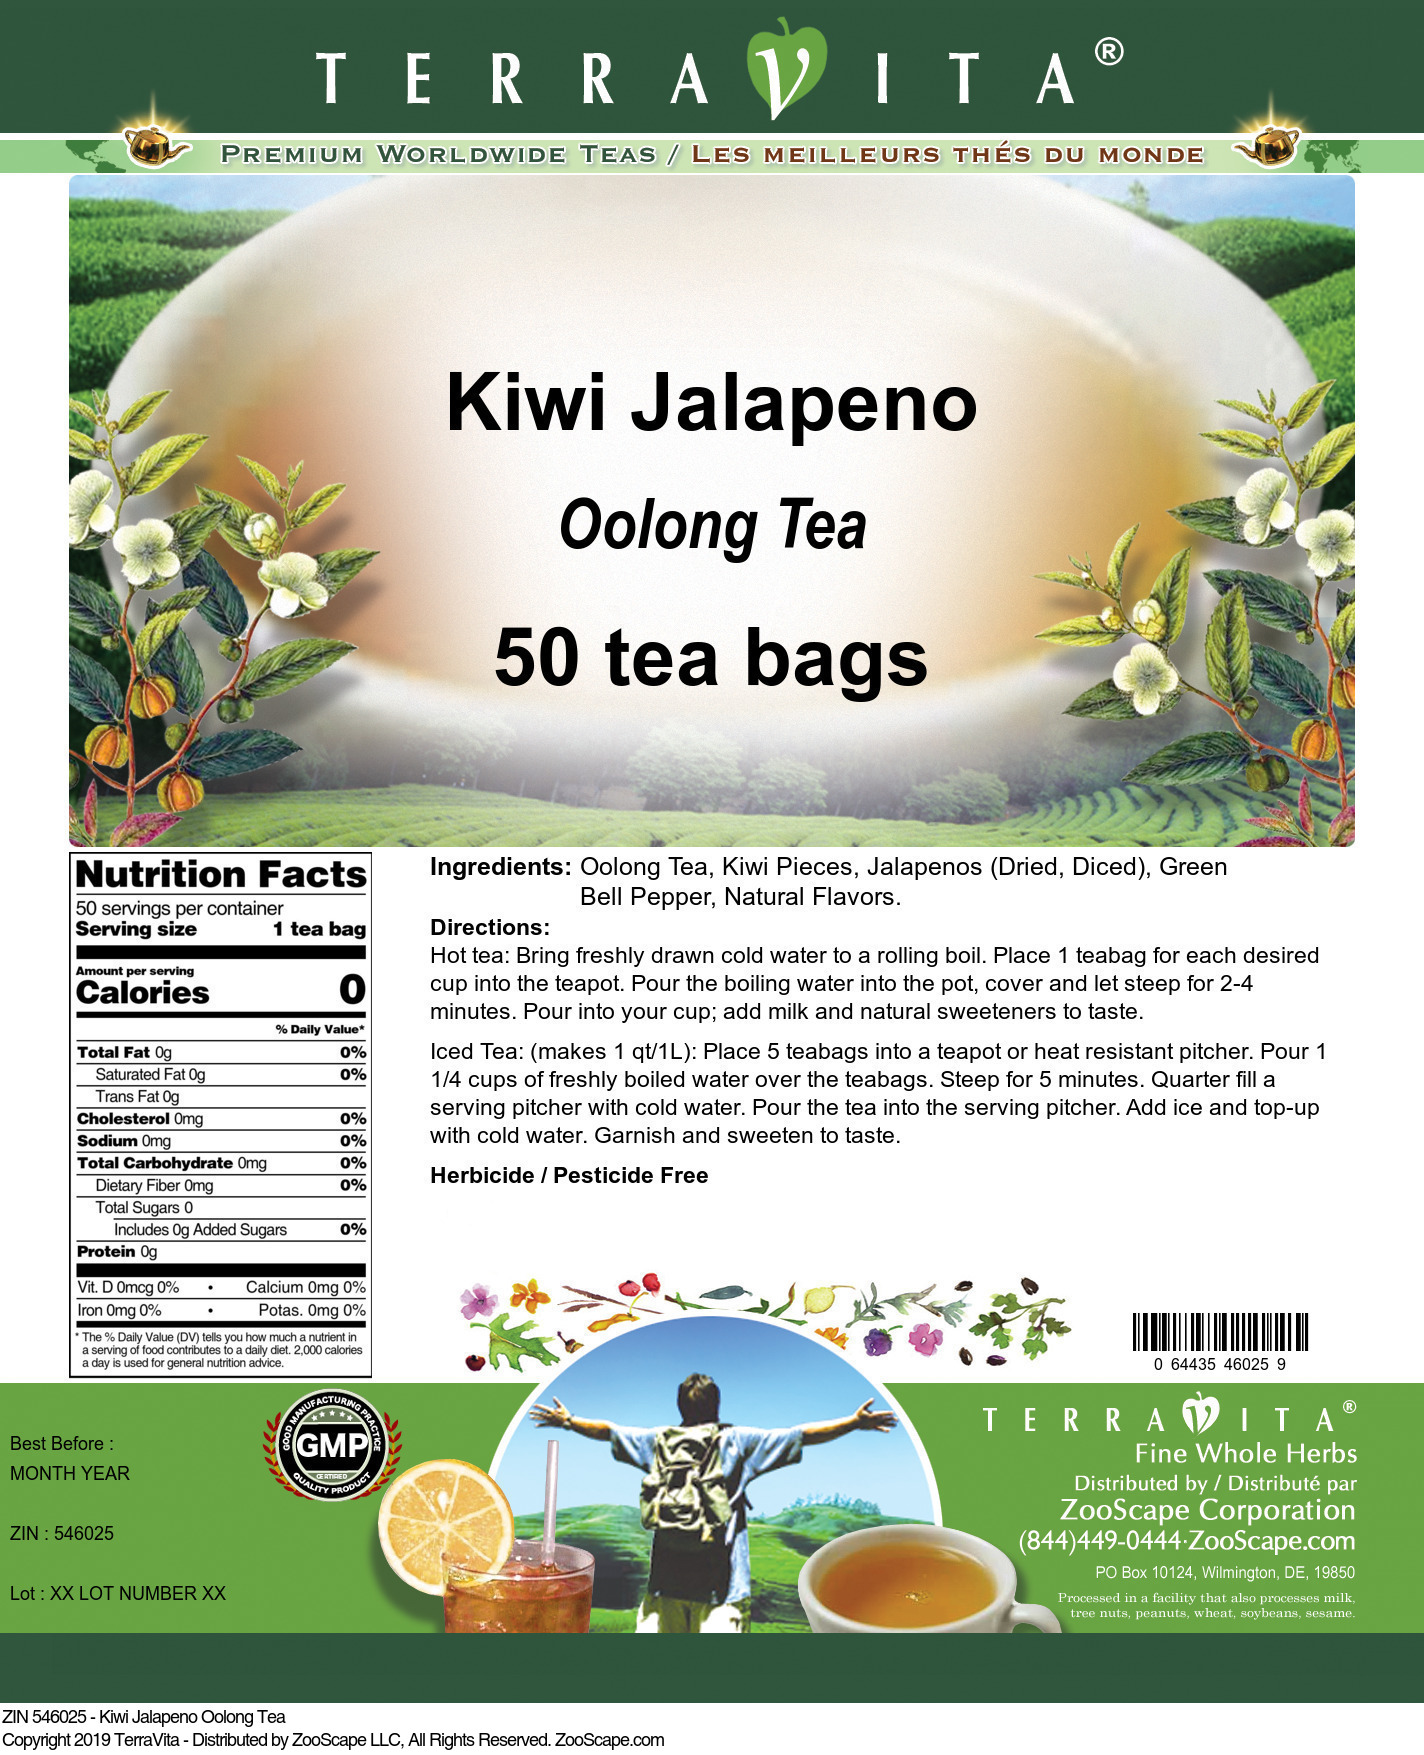 Kiwi Jalapeno Oolong Tea - Label